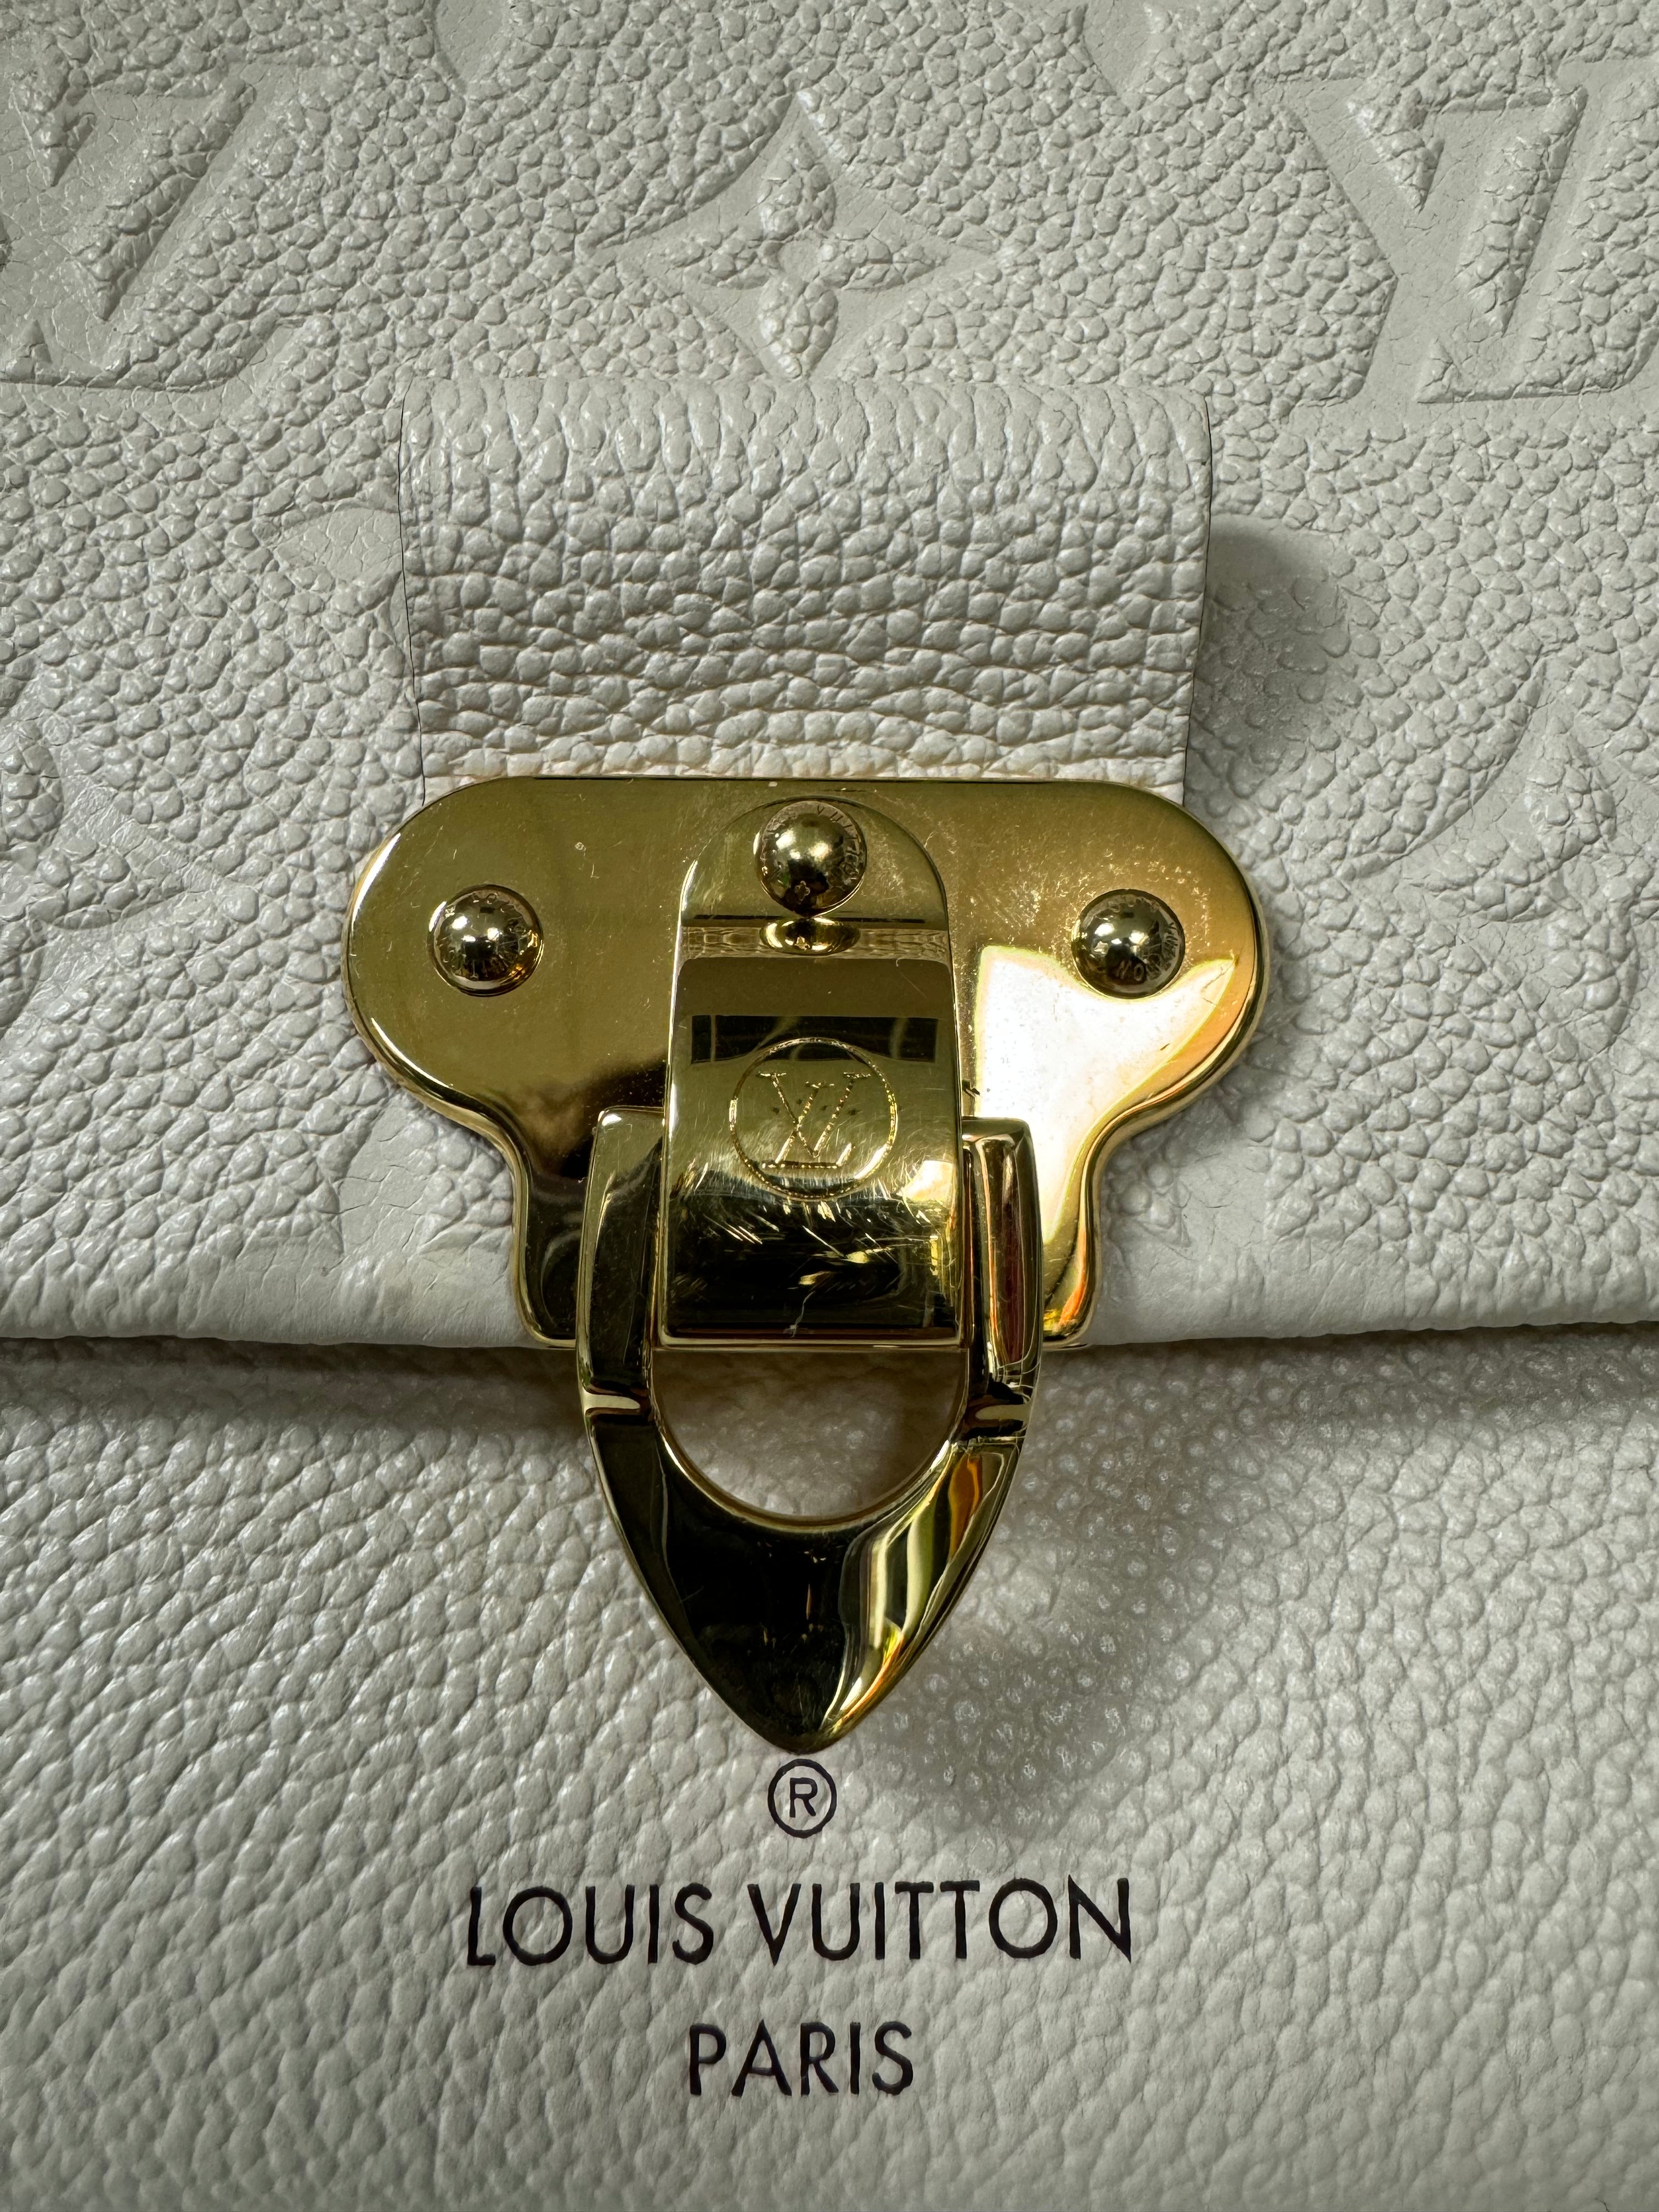 Prestigiosa marca de ropa Louis Vuitton donará un millón de